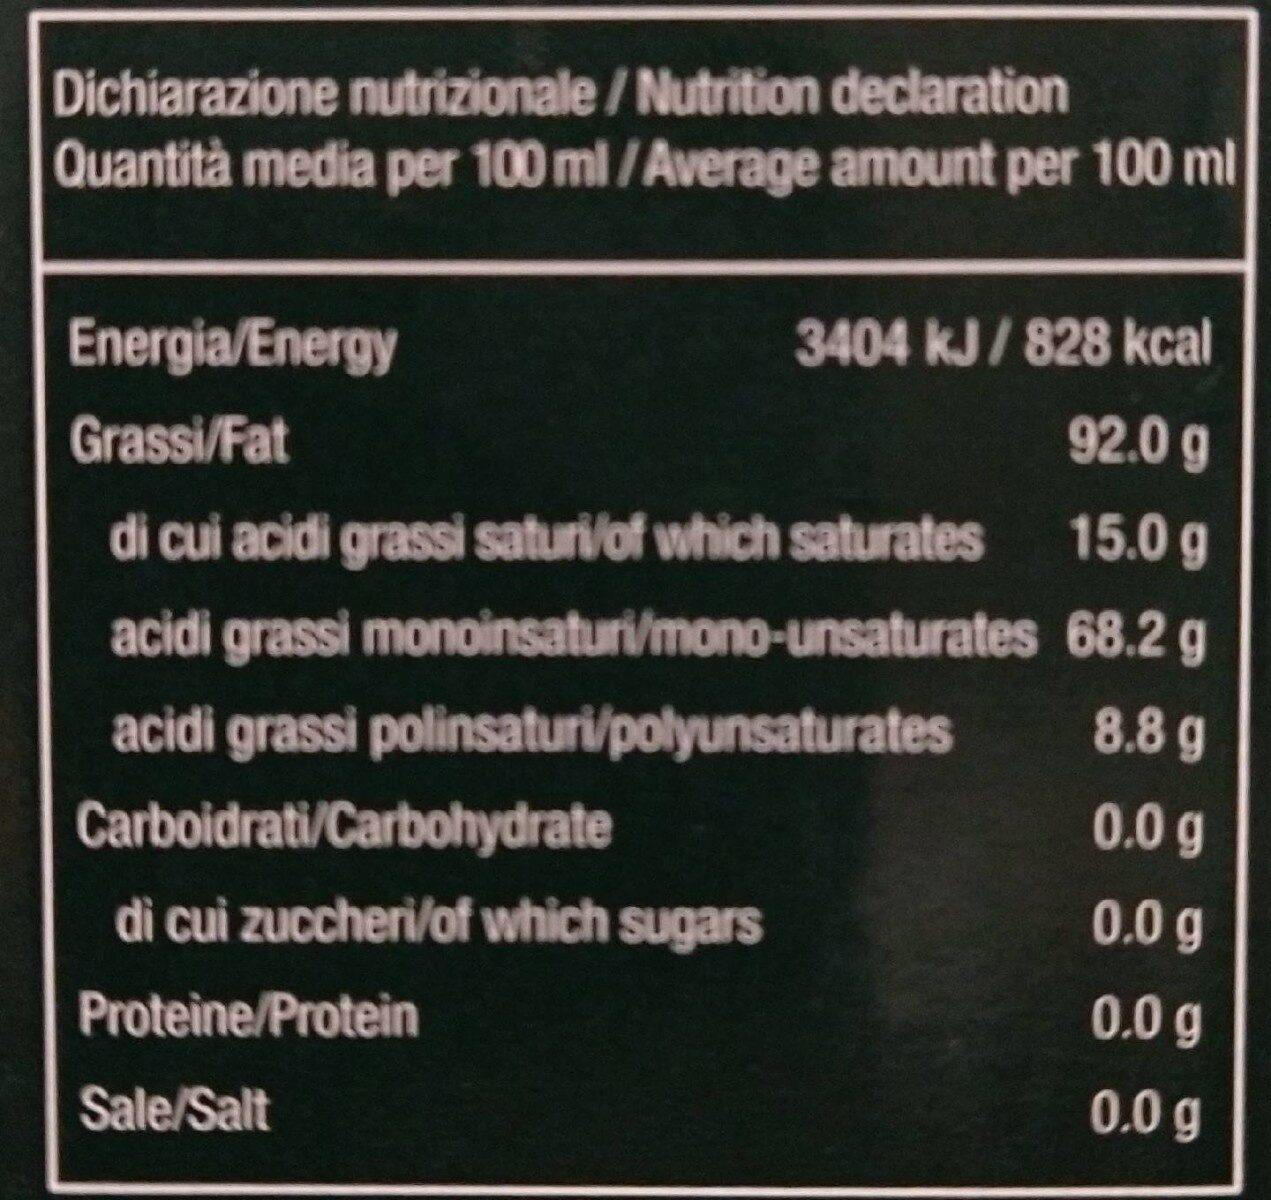 Olio extravergine di oliva - Nutrition facts - fr